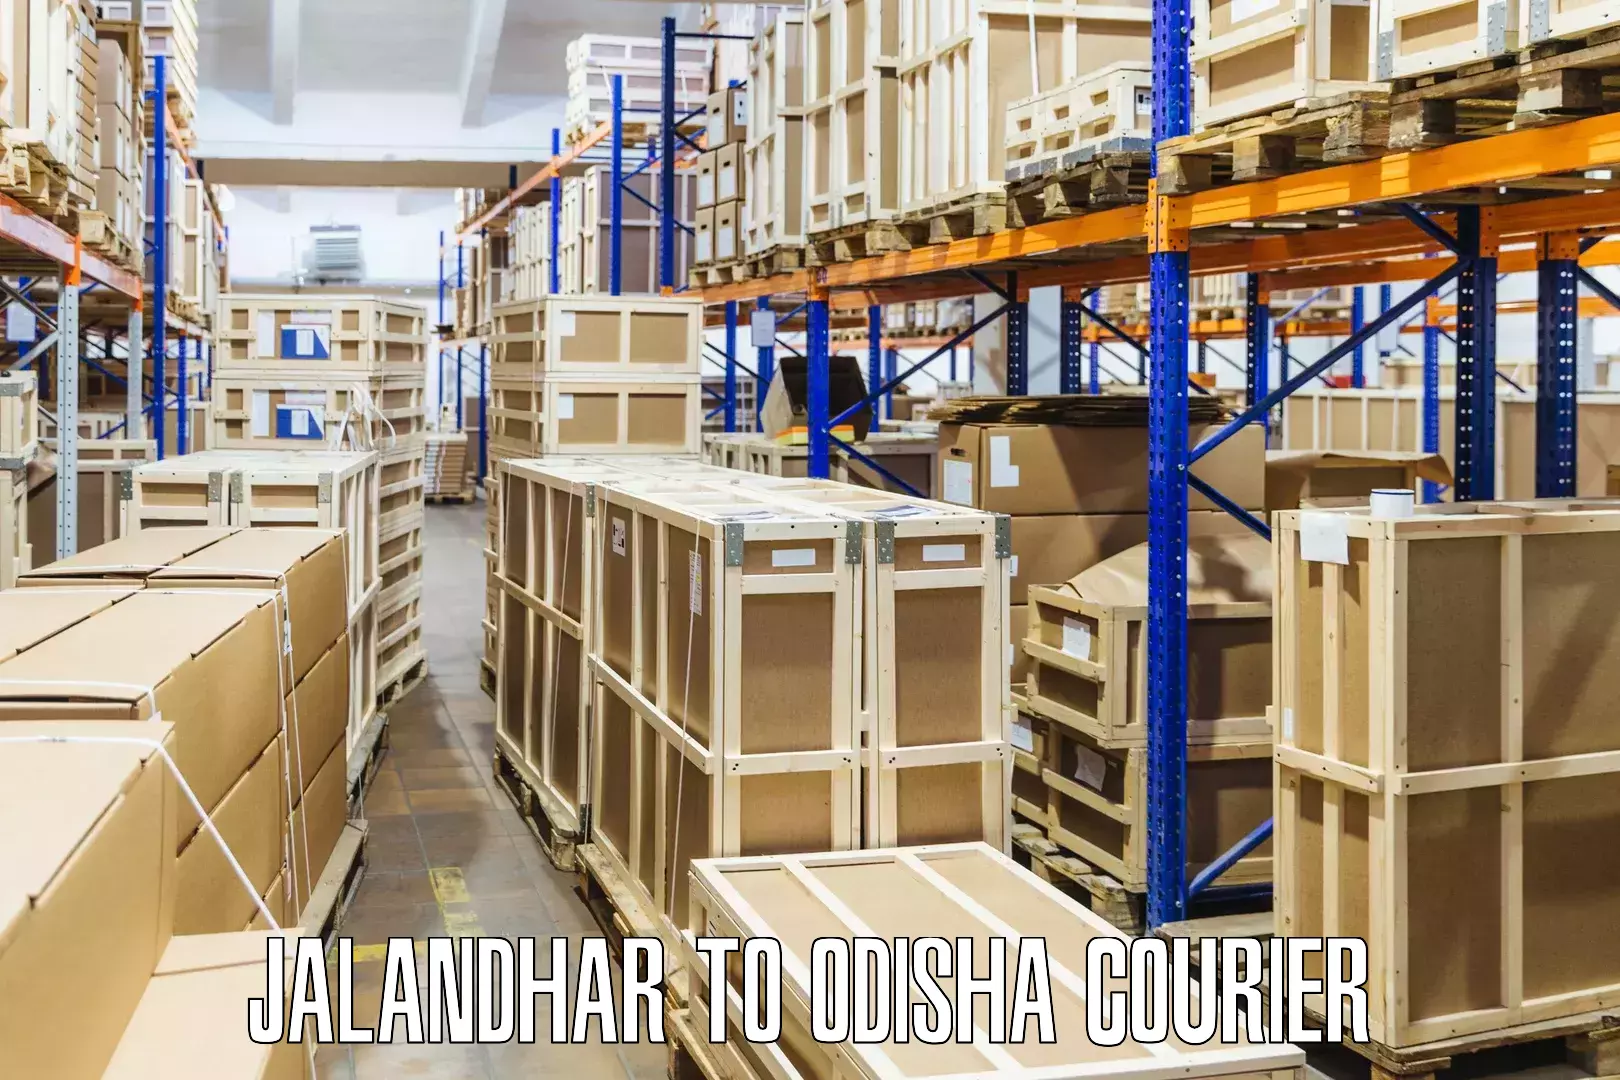 24-hour courier service Jalandhar to Kantamal